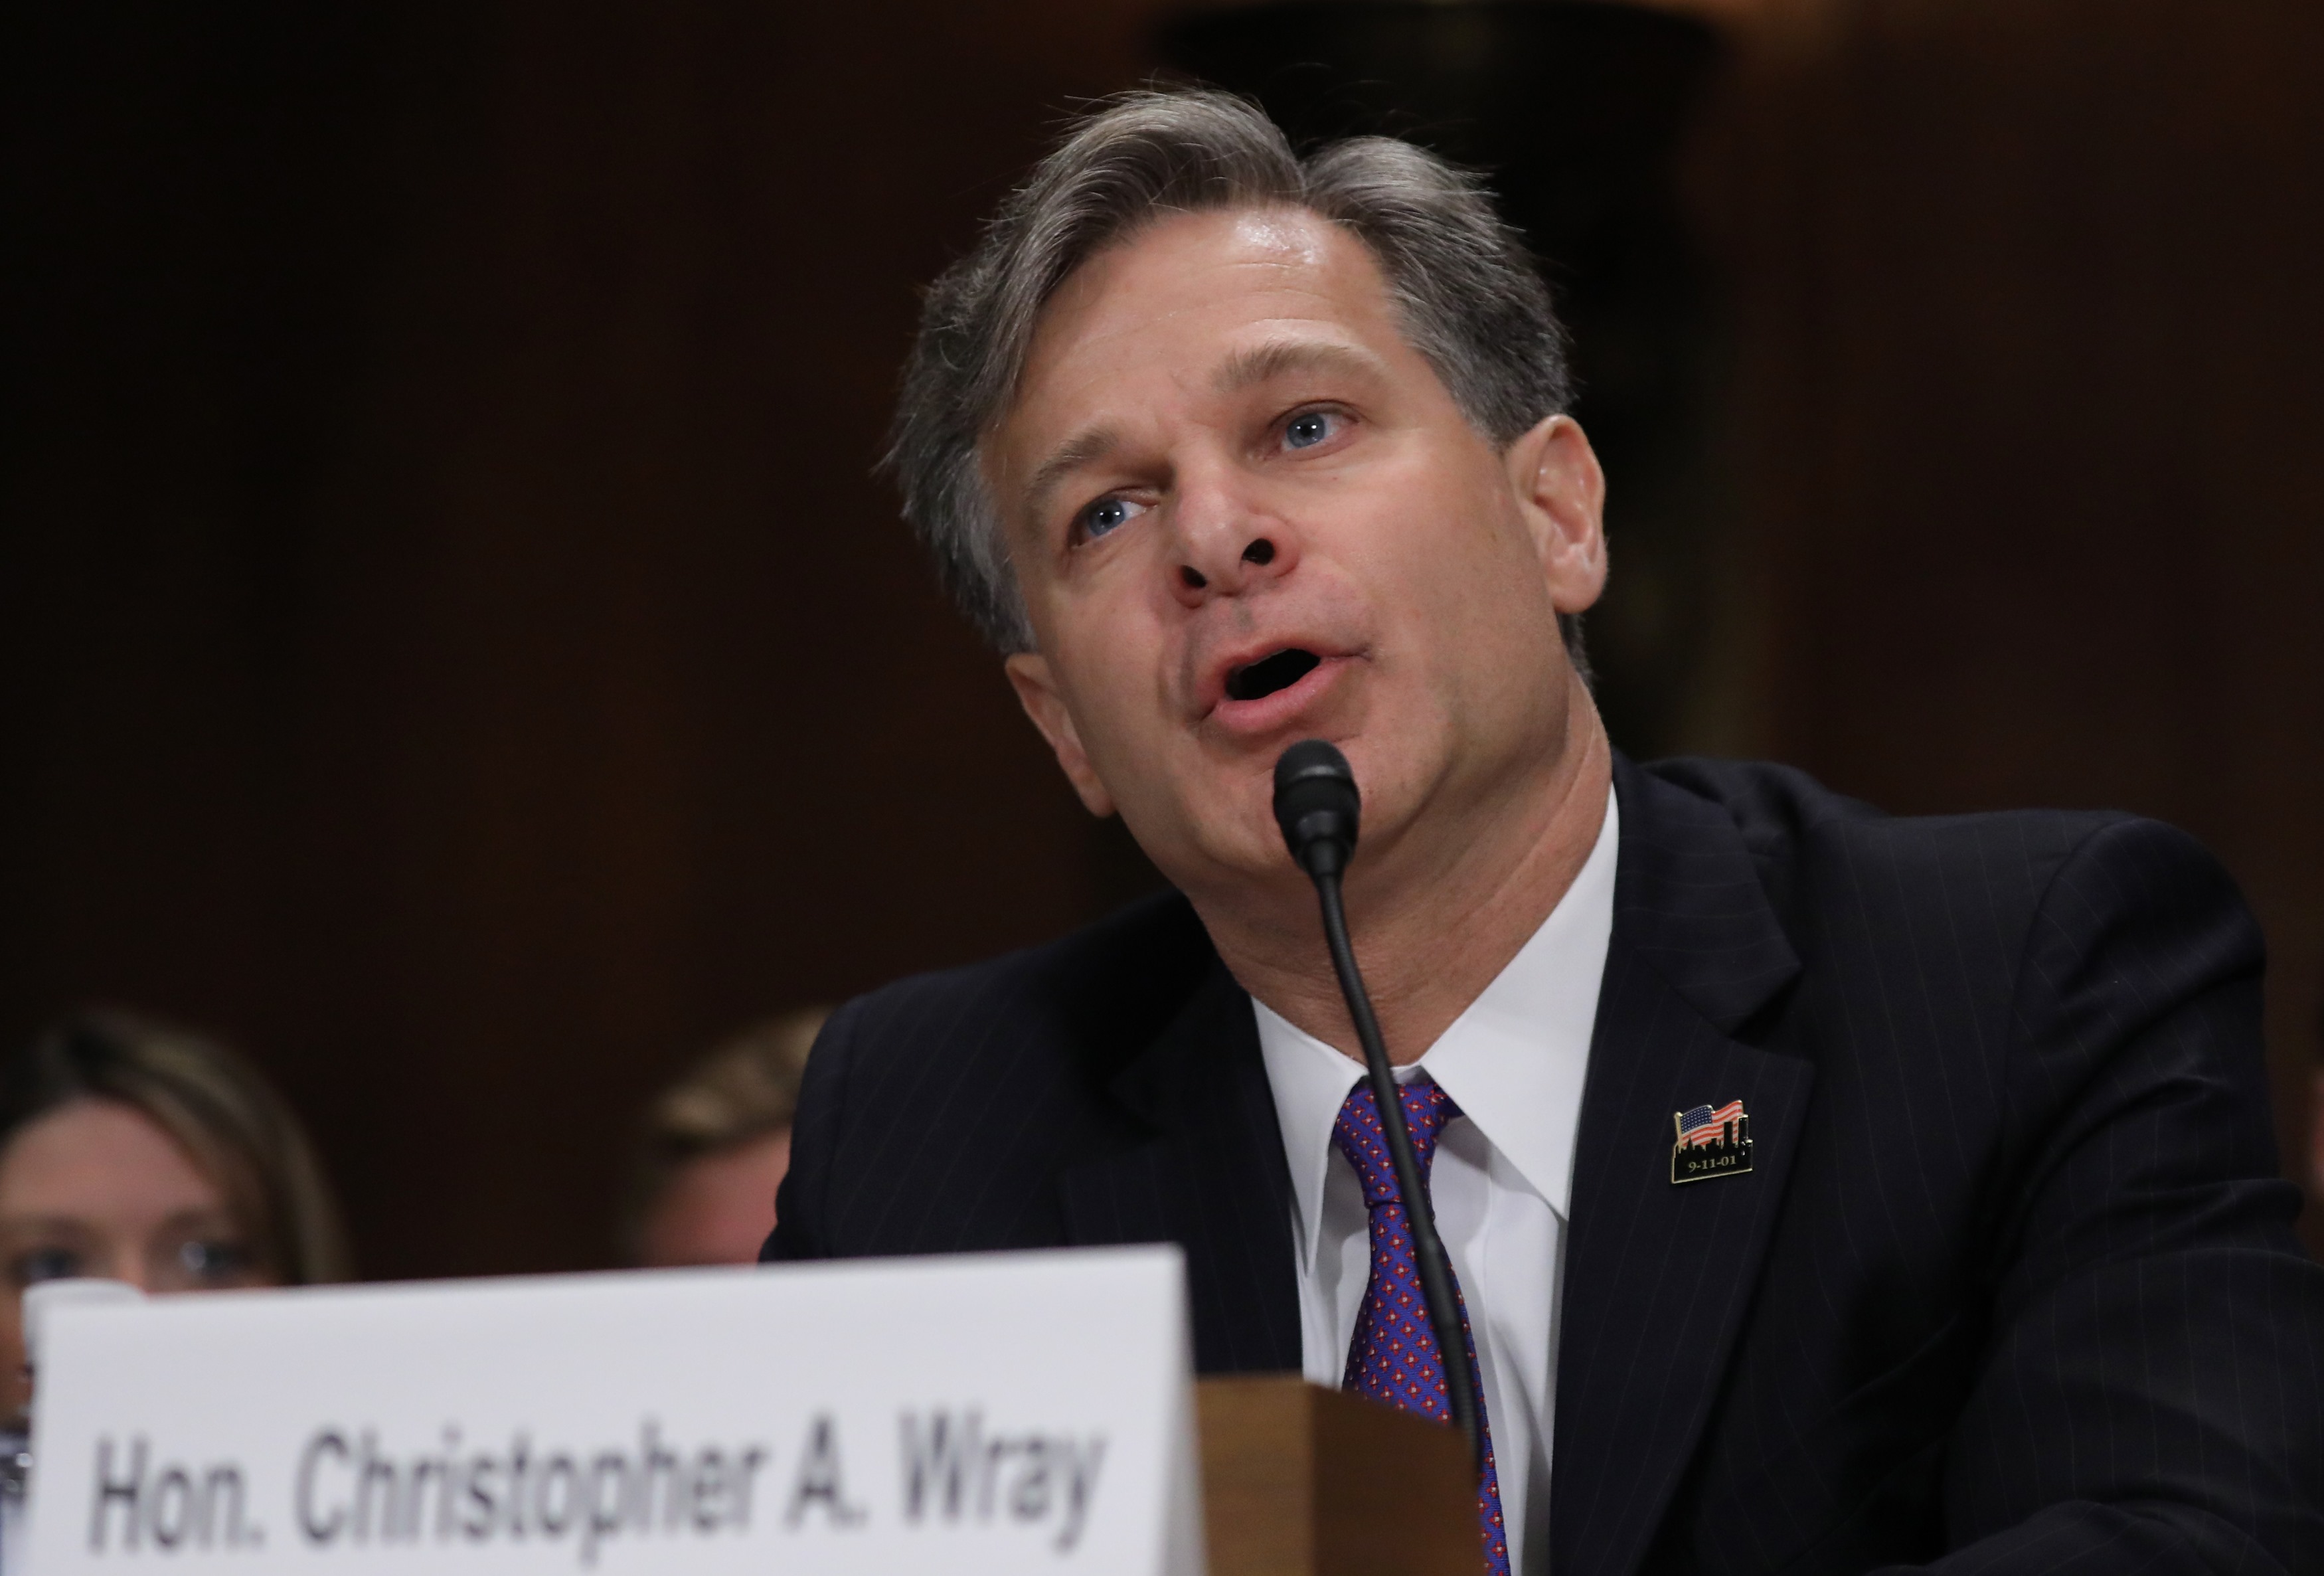 Senado confirma Christopher Wray director FBI